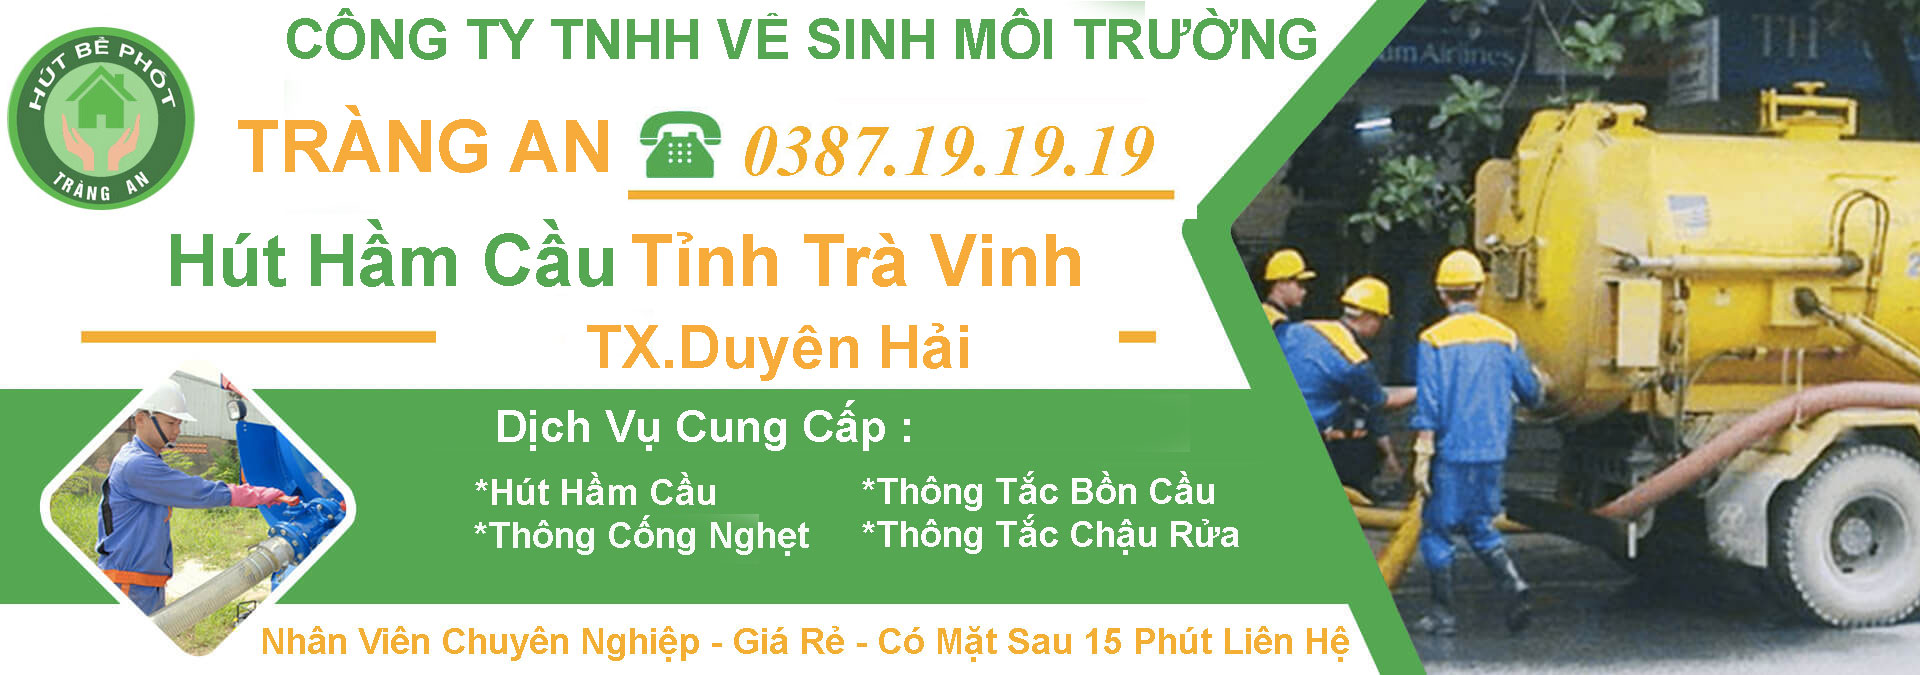 Hut Ham Cau Tra Vinh Duyen Hai